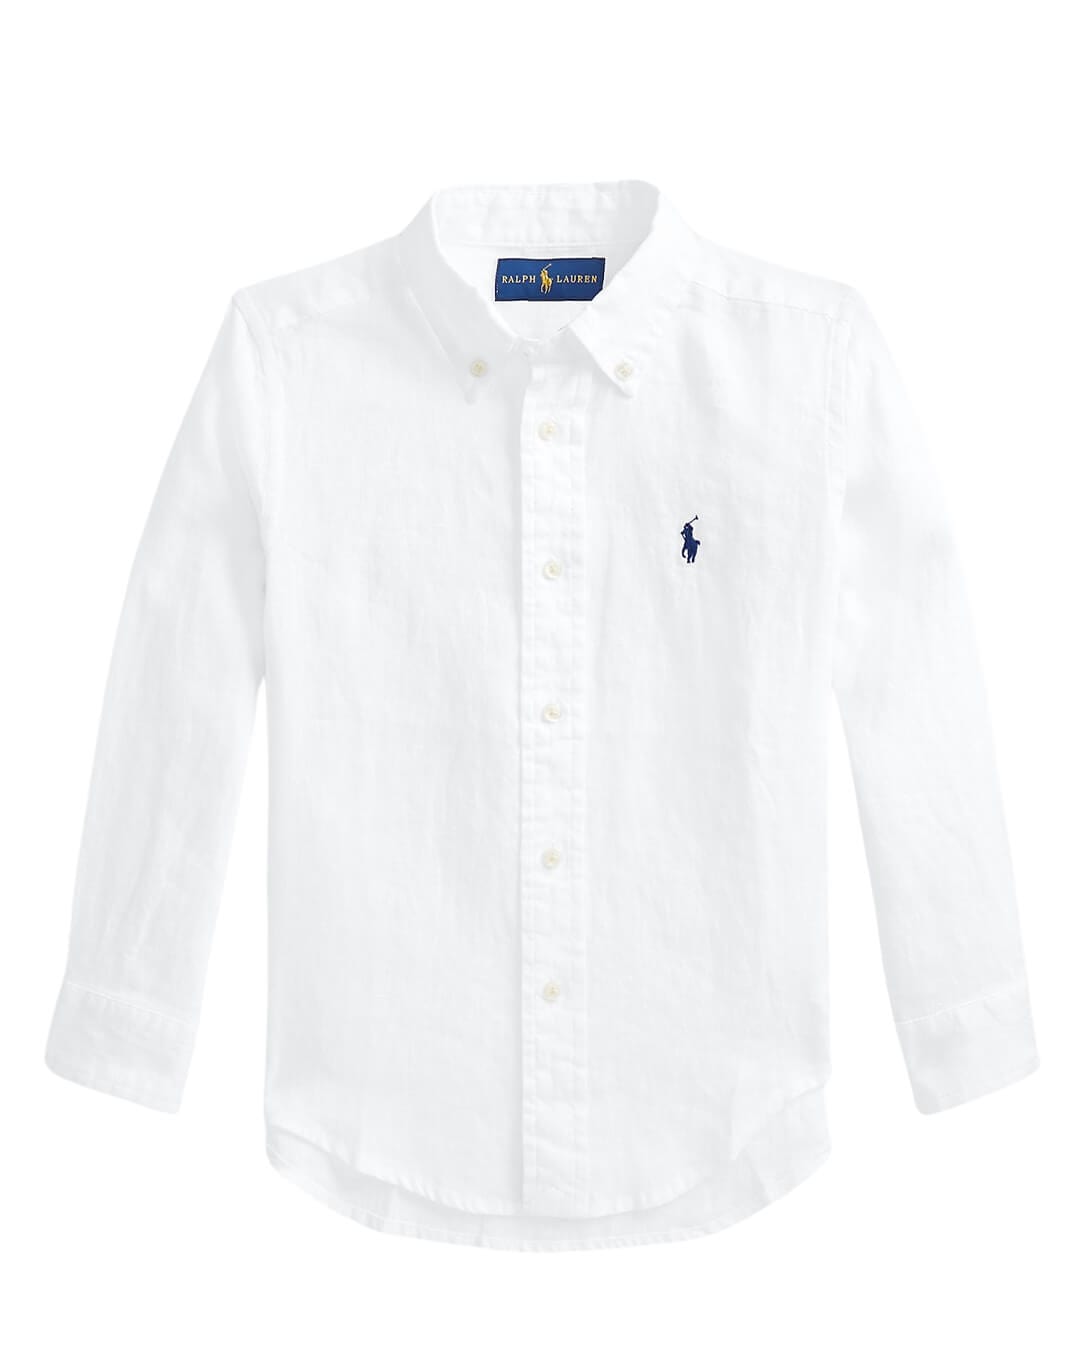 Polo Ralph Lauren Shirts Boys Polo Ralph Lauren Button Down Linen White Sport Shirt